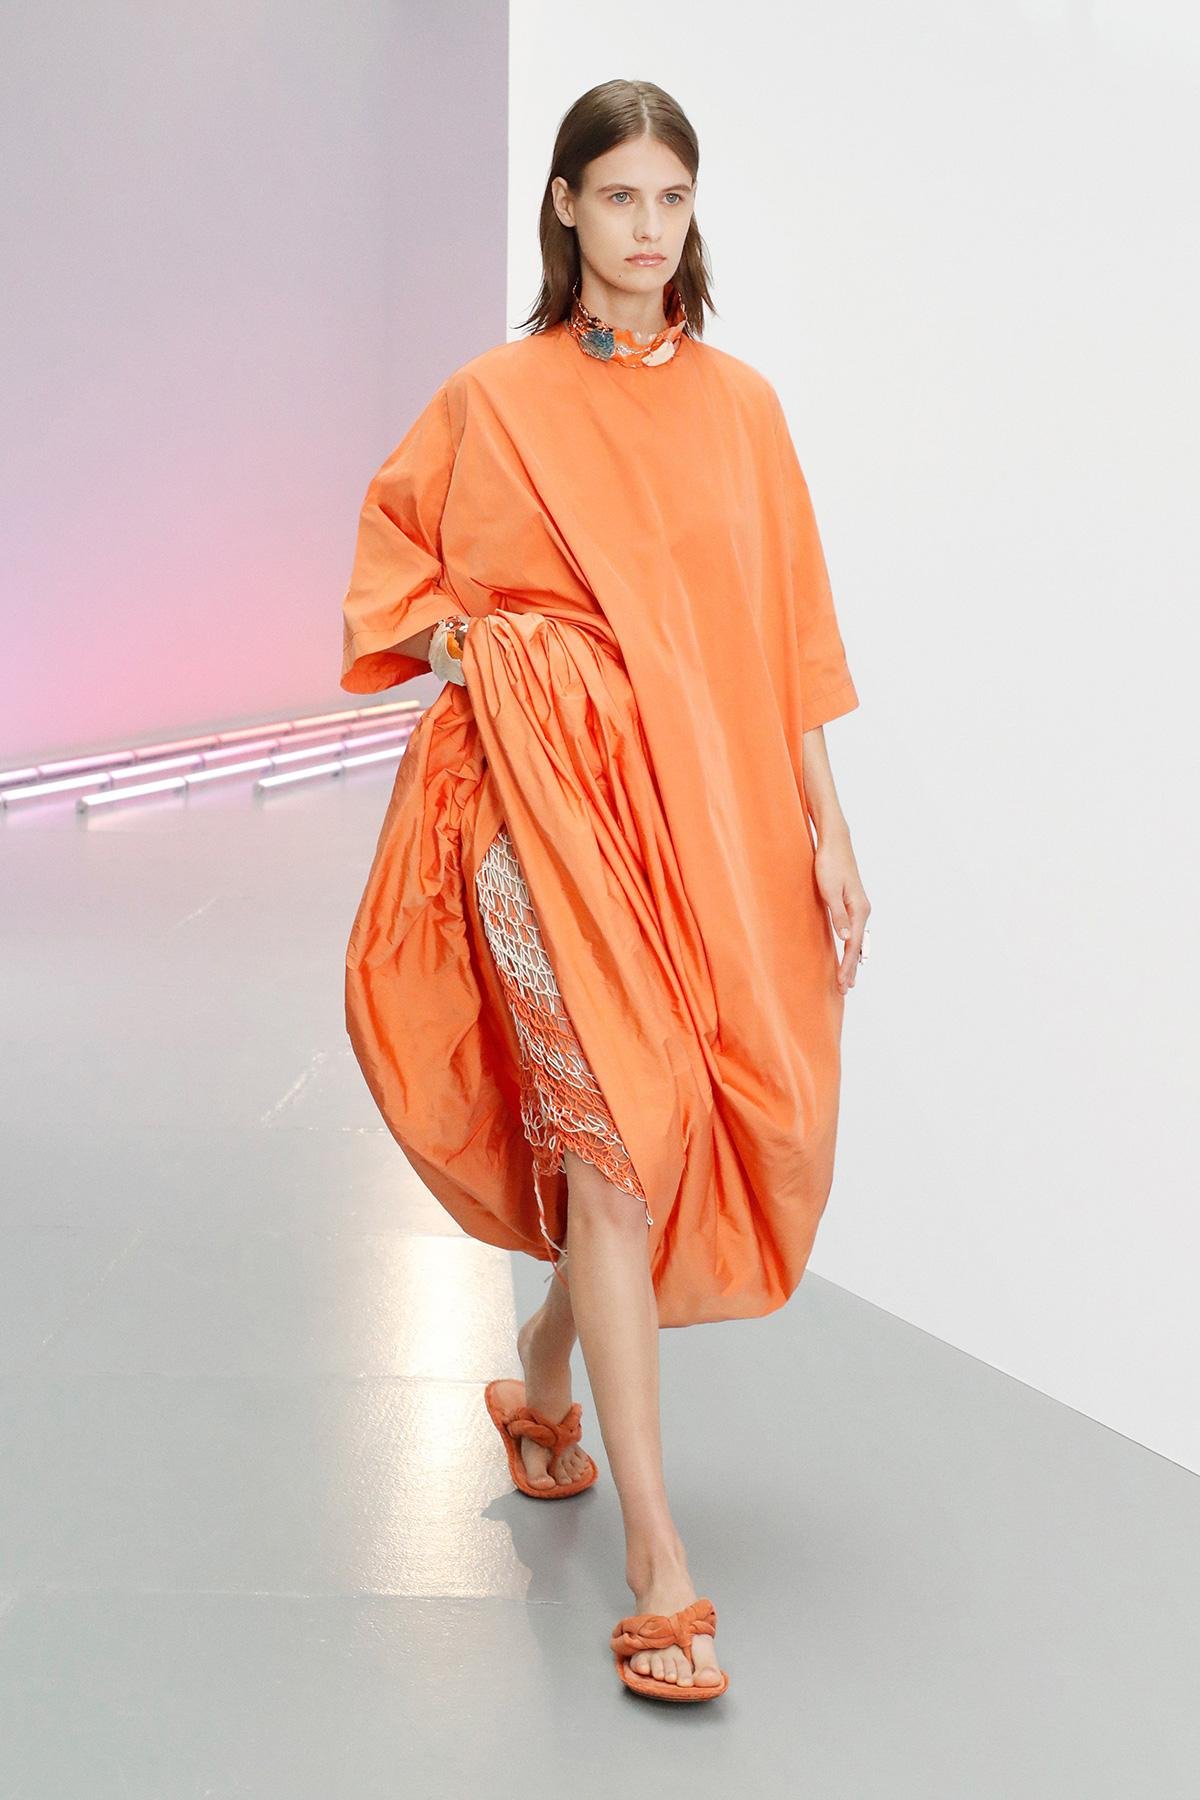 Acne Studios أخر صيحات الموضة أسبوع الموضة ملابس ملابس باللون البرتقالي، اخر موضة ربيع 2021 Fashion Trends Spring Summer